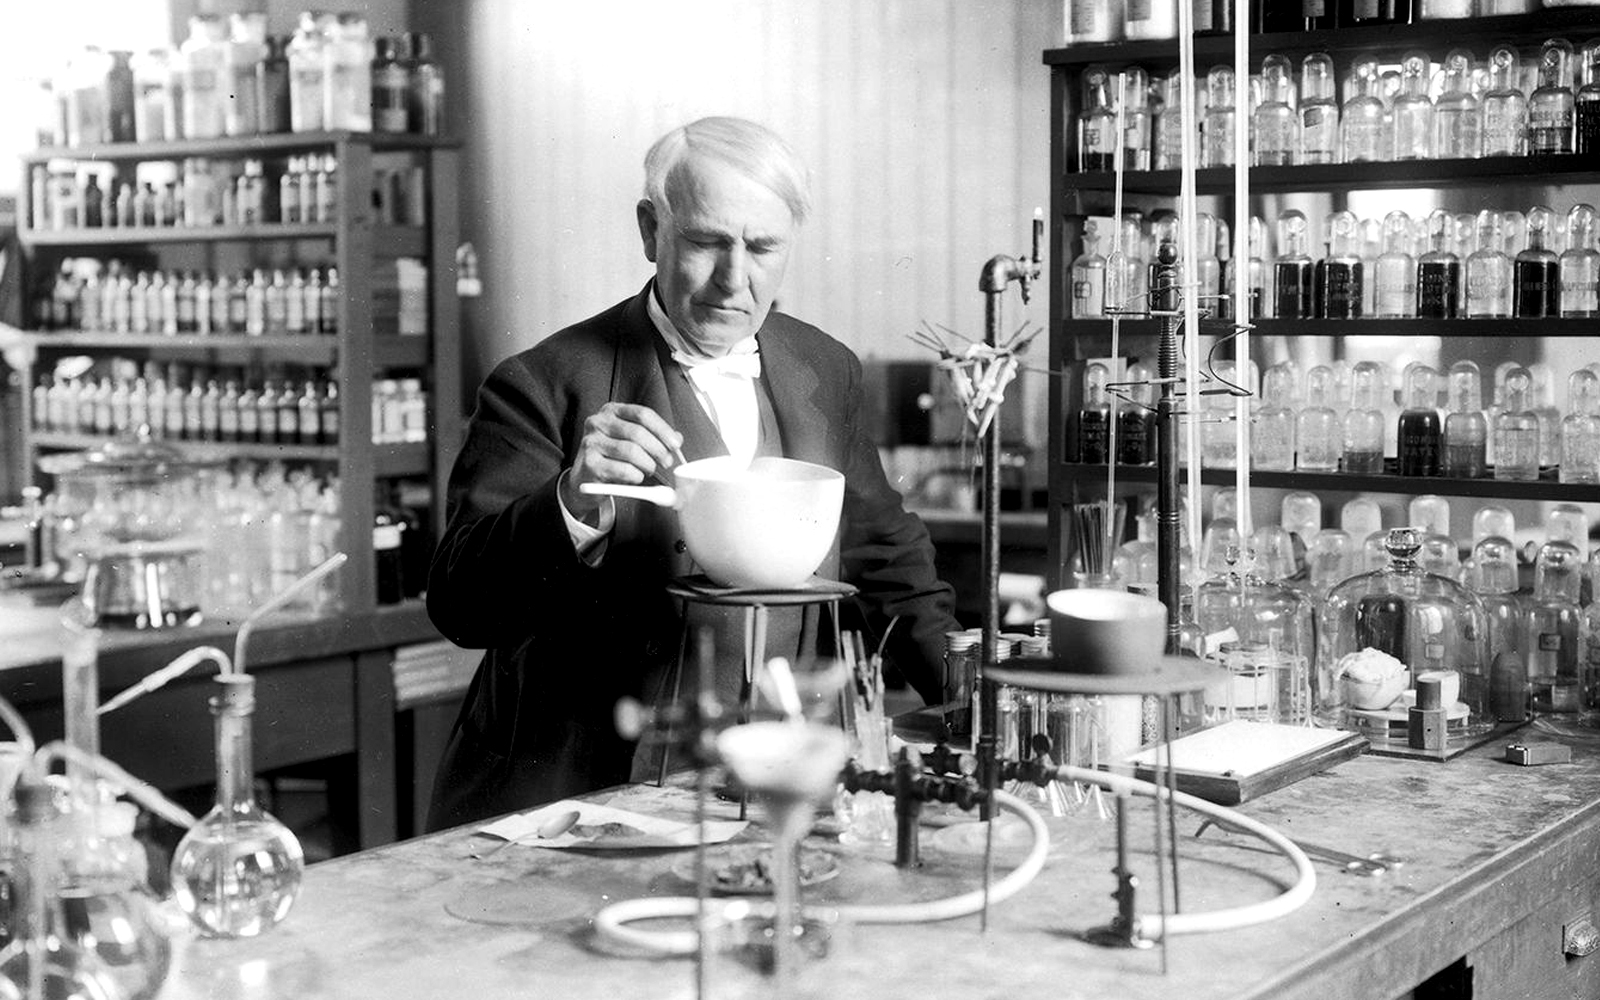 ทำไม Thomas Edison ถึงคัดเลือกพนักงานด้วยการให้พวกเขา “กินซุป” ให้ดู?